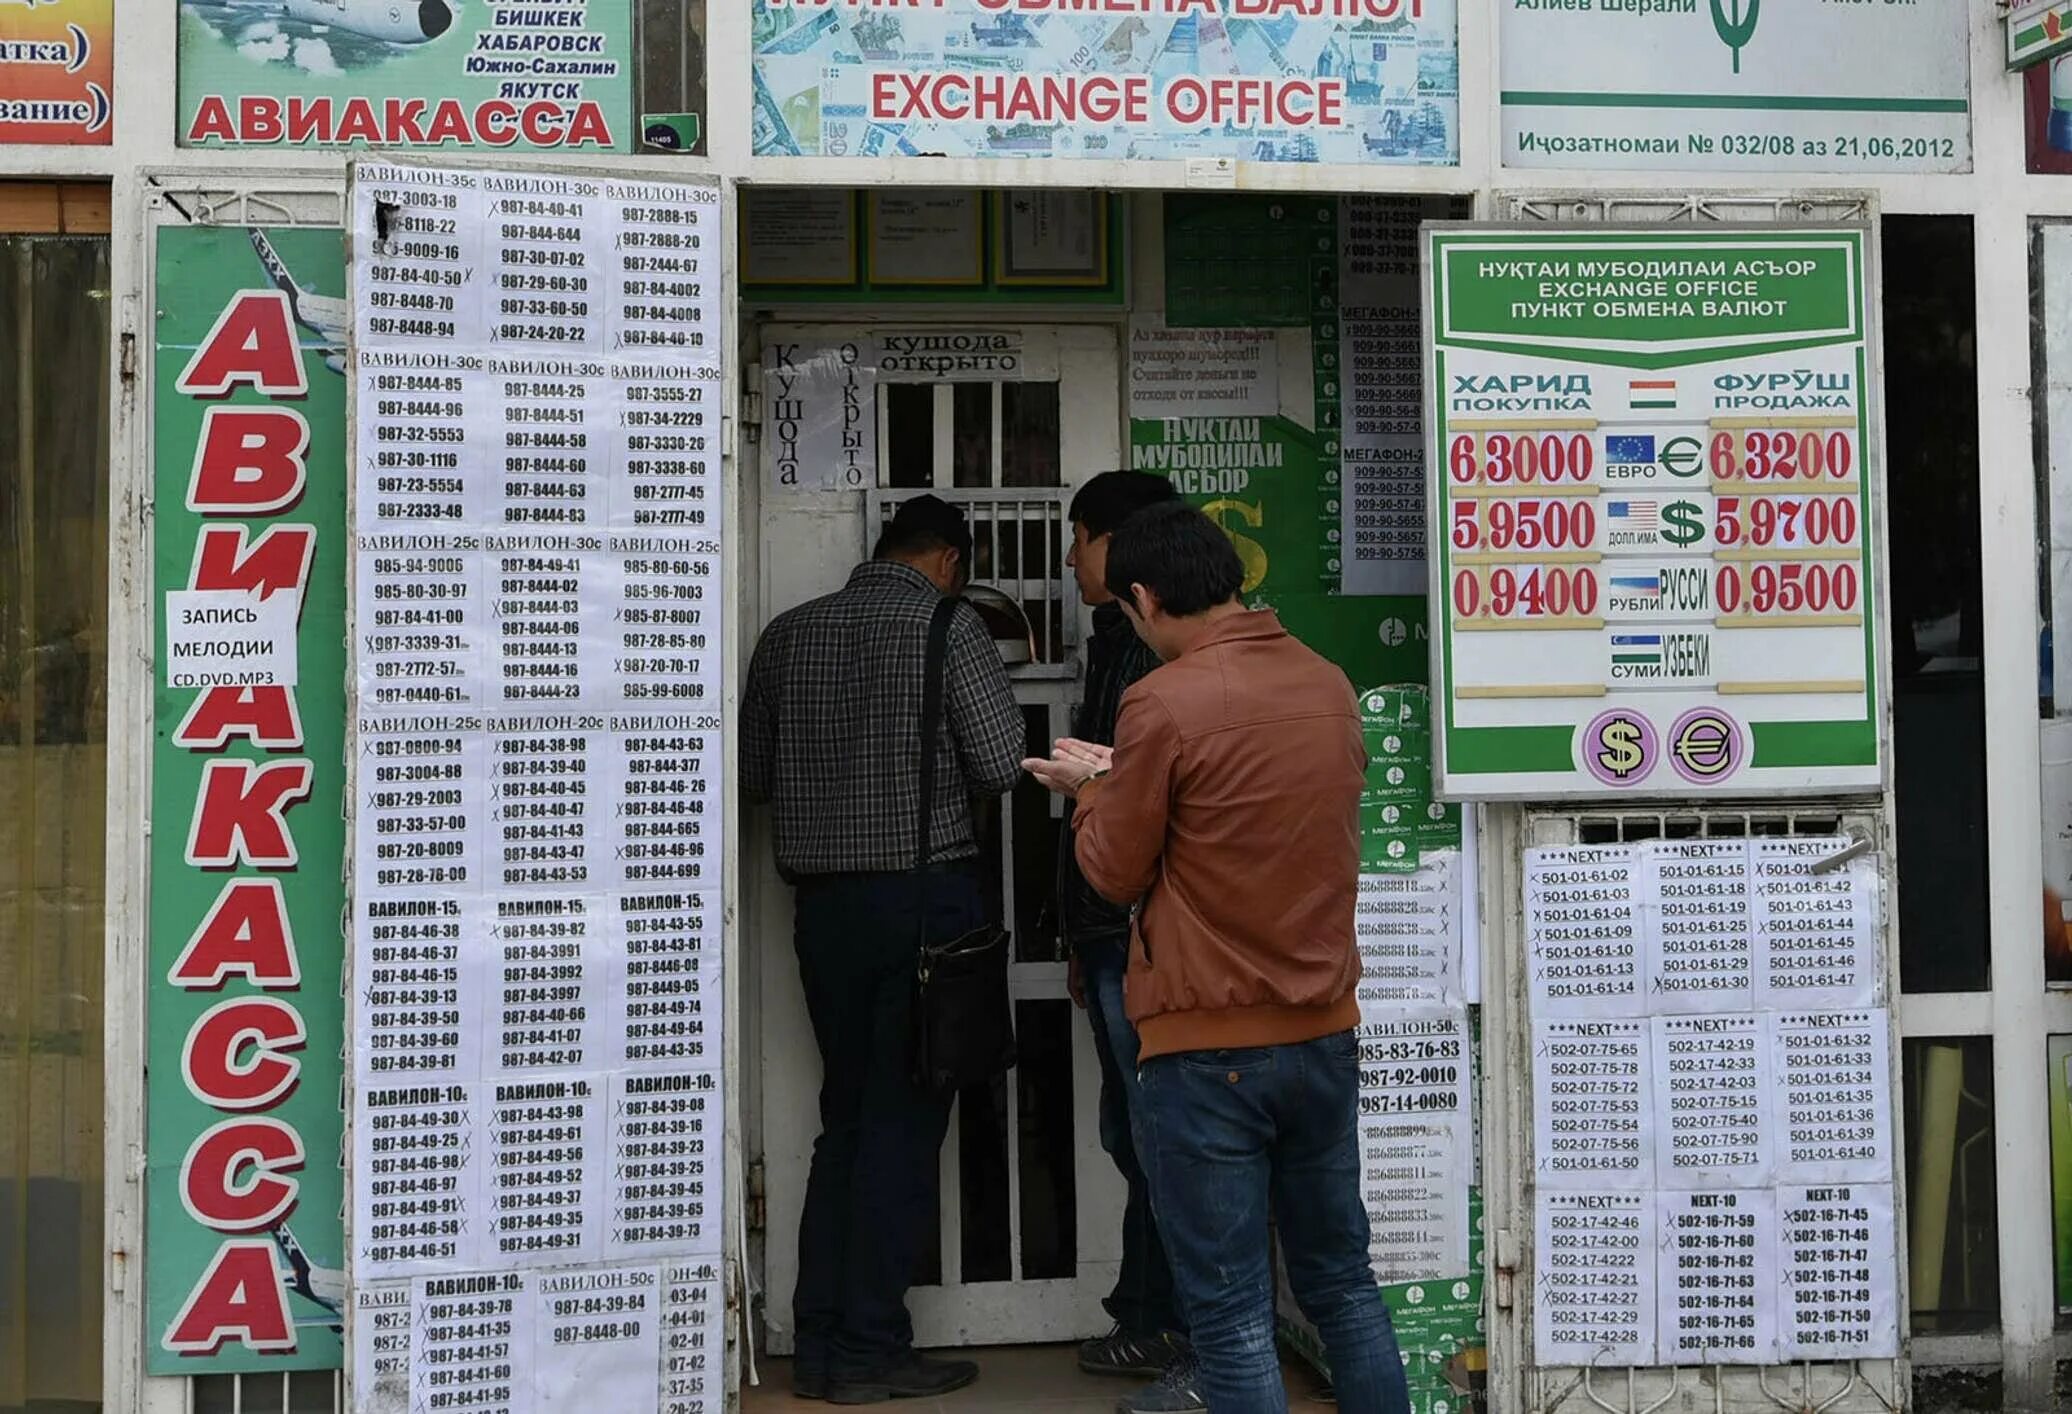 Сум таджикистан. Обменные пункты в Таджикистане. Курс рубля к Сомони. Обмен валюты. Курсы валют в Таджикистане.